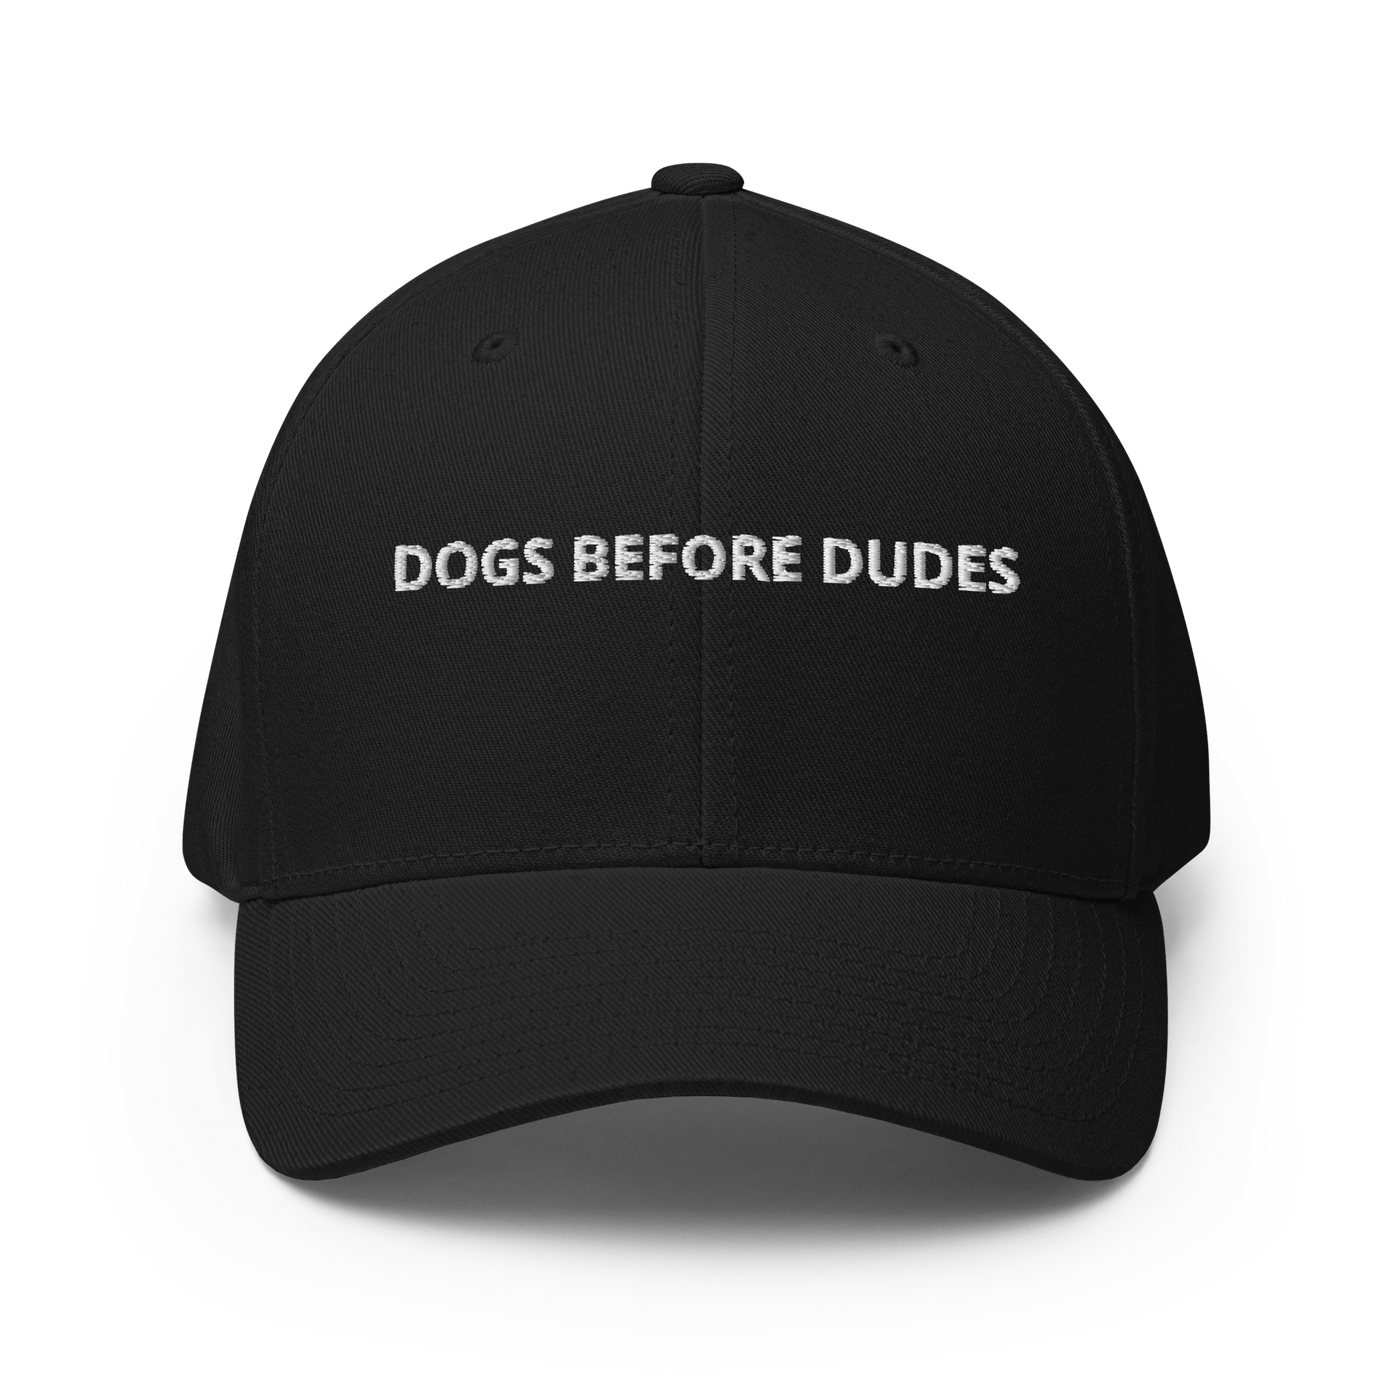 Dogs before Dudes Flexfit Cap - Black - S/M - Just Another Cap Store